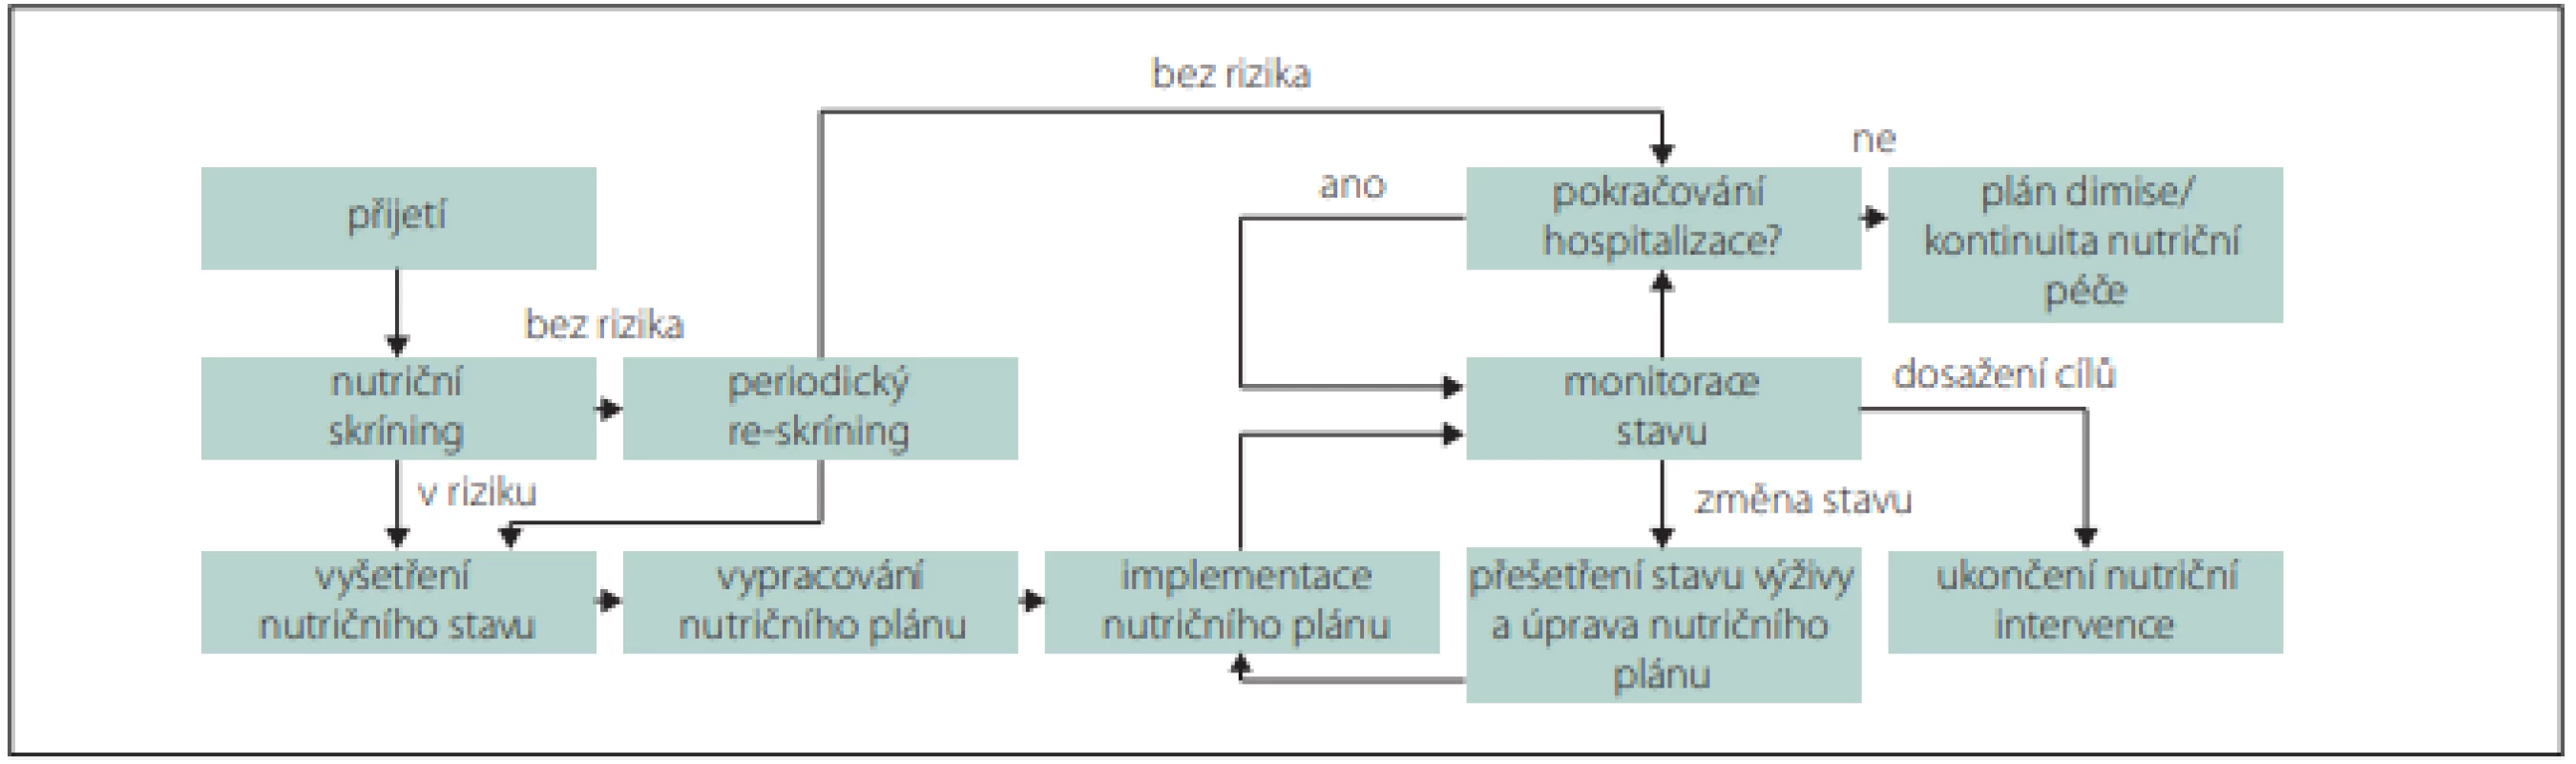 Doporučovaný postup pro nutriční péči v průběhu hospitalizace.<br>
Fig. 1. Recommended procedure for nutritional care during hospitalization.